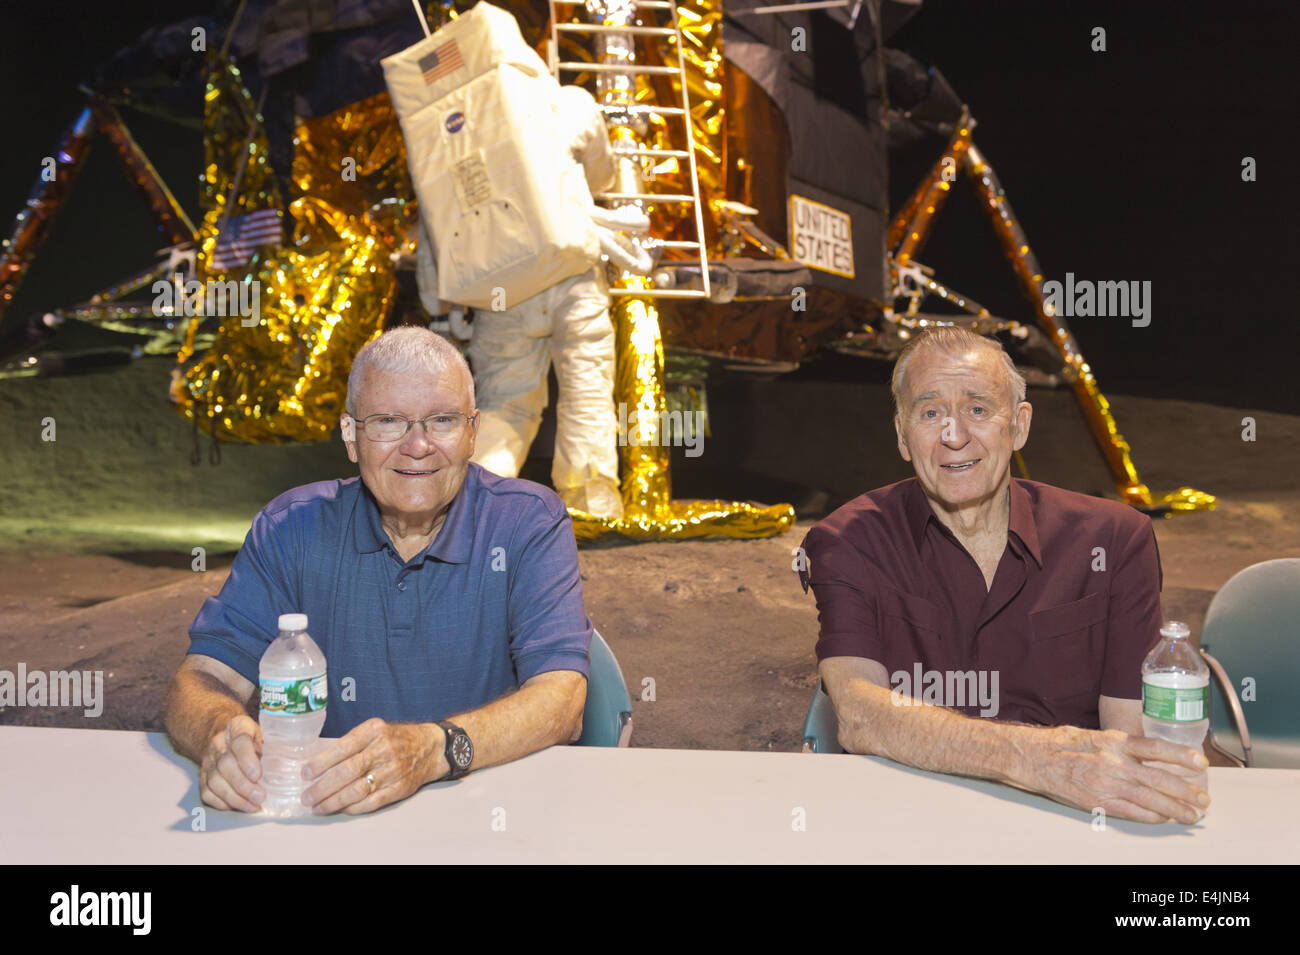 12 juillet 2014 - Garden City, New York, États-Unis - L-R, ex-astronautes Apollo de la NASA FRED HAISE ET WALTER CUNNINGHAM sont à un été de '69 de l'événement Célébration tenue à la Long Island Cradle of Aviation Museum, sur le 45e anniversaire de la NASA Apollo 11 Lunar Module LEM, Excursion, l'atterrissage sur la lune le 20 juillet 1969. Haise, le pilote du module lunaire de la mission Apollo 13 et Cunningham le pilote du module lunaire Apollo 7 pour la mission étaient dans la salle durant la réunion LEM d'anciens Northrop Grumman Aerospace Corporation employés. Derrière eux est le module lunaire LM-13 destinés à la mission Apollo 18 à Copern Banque D'Images